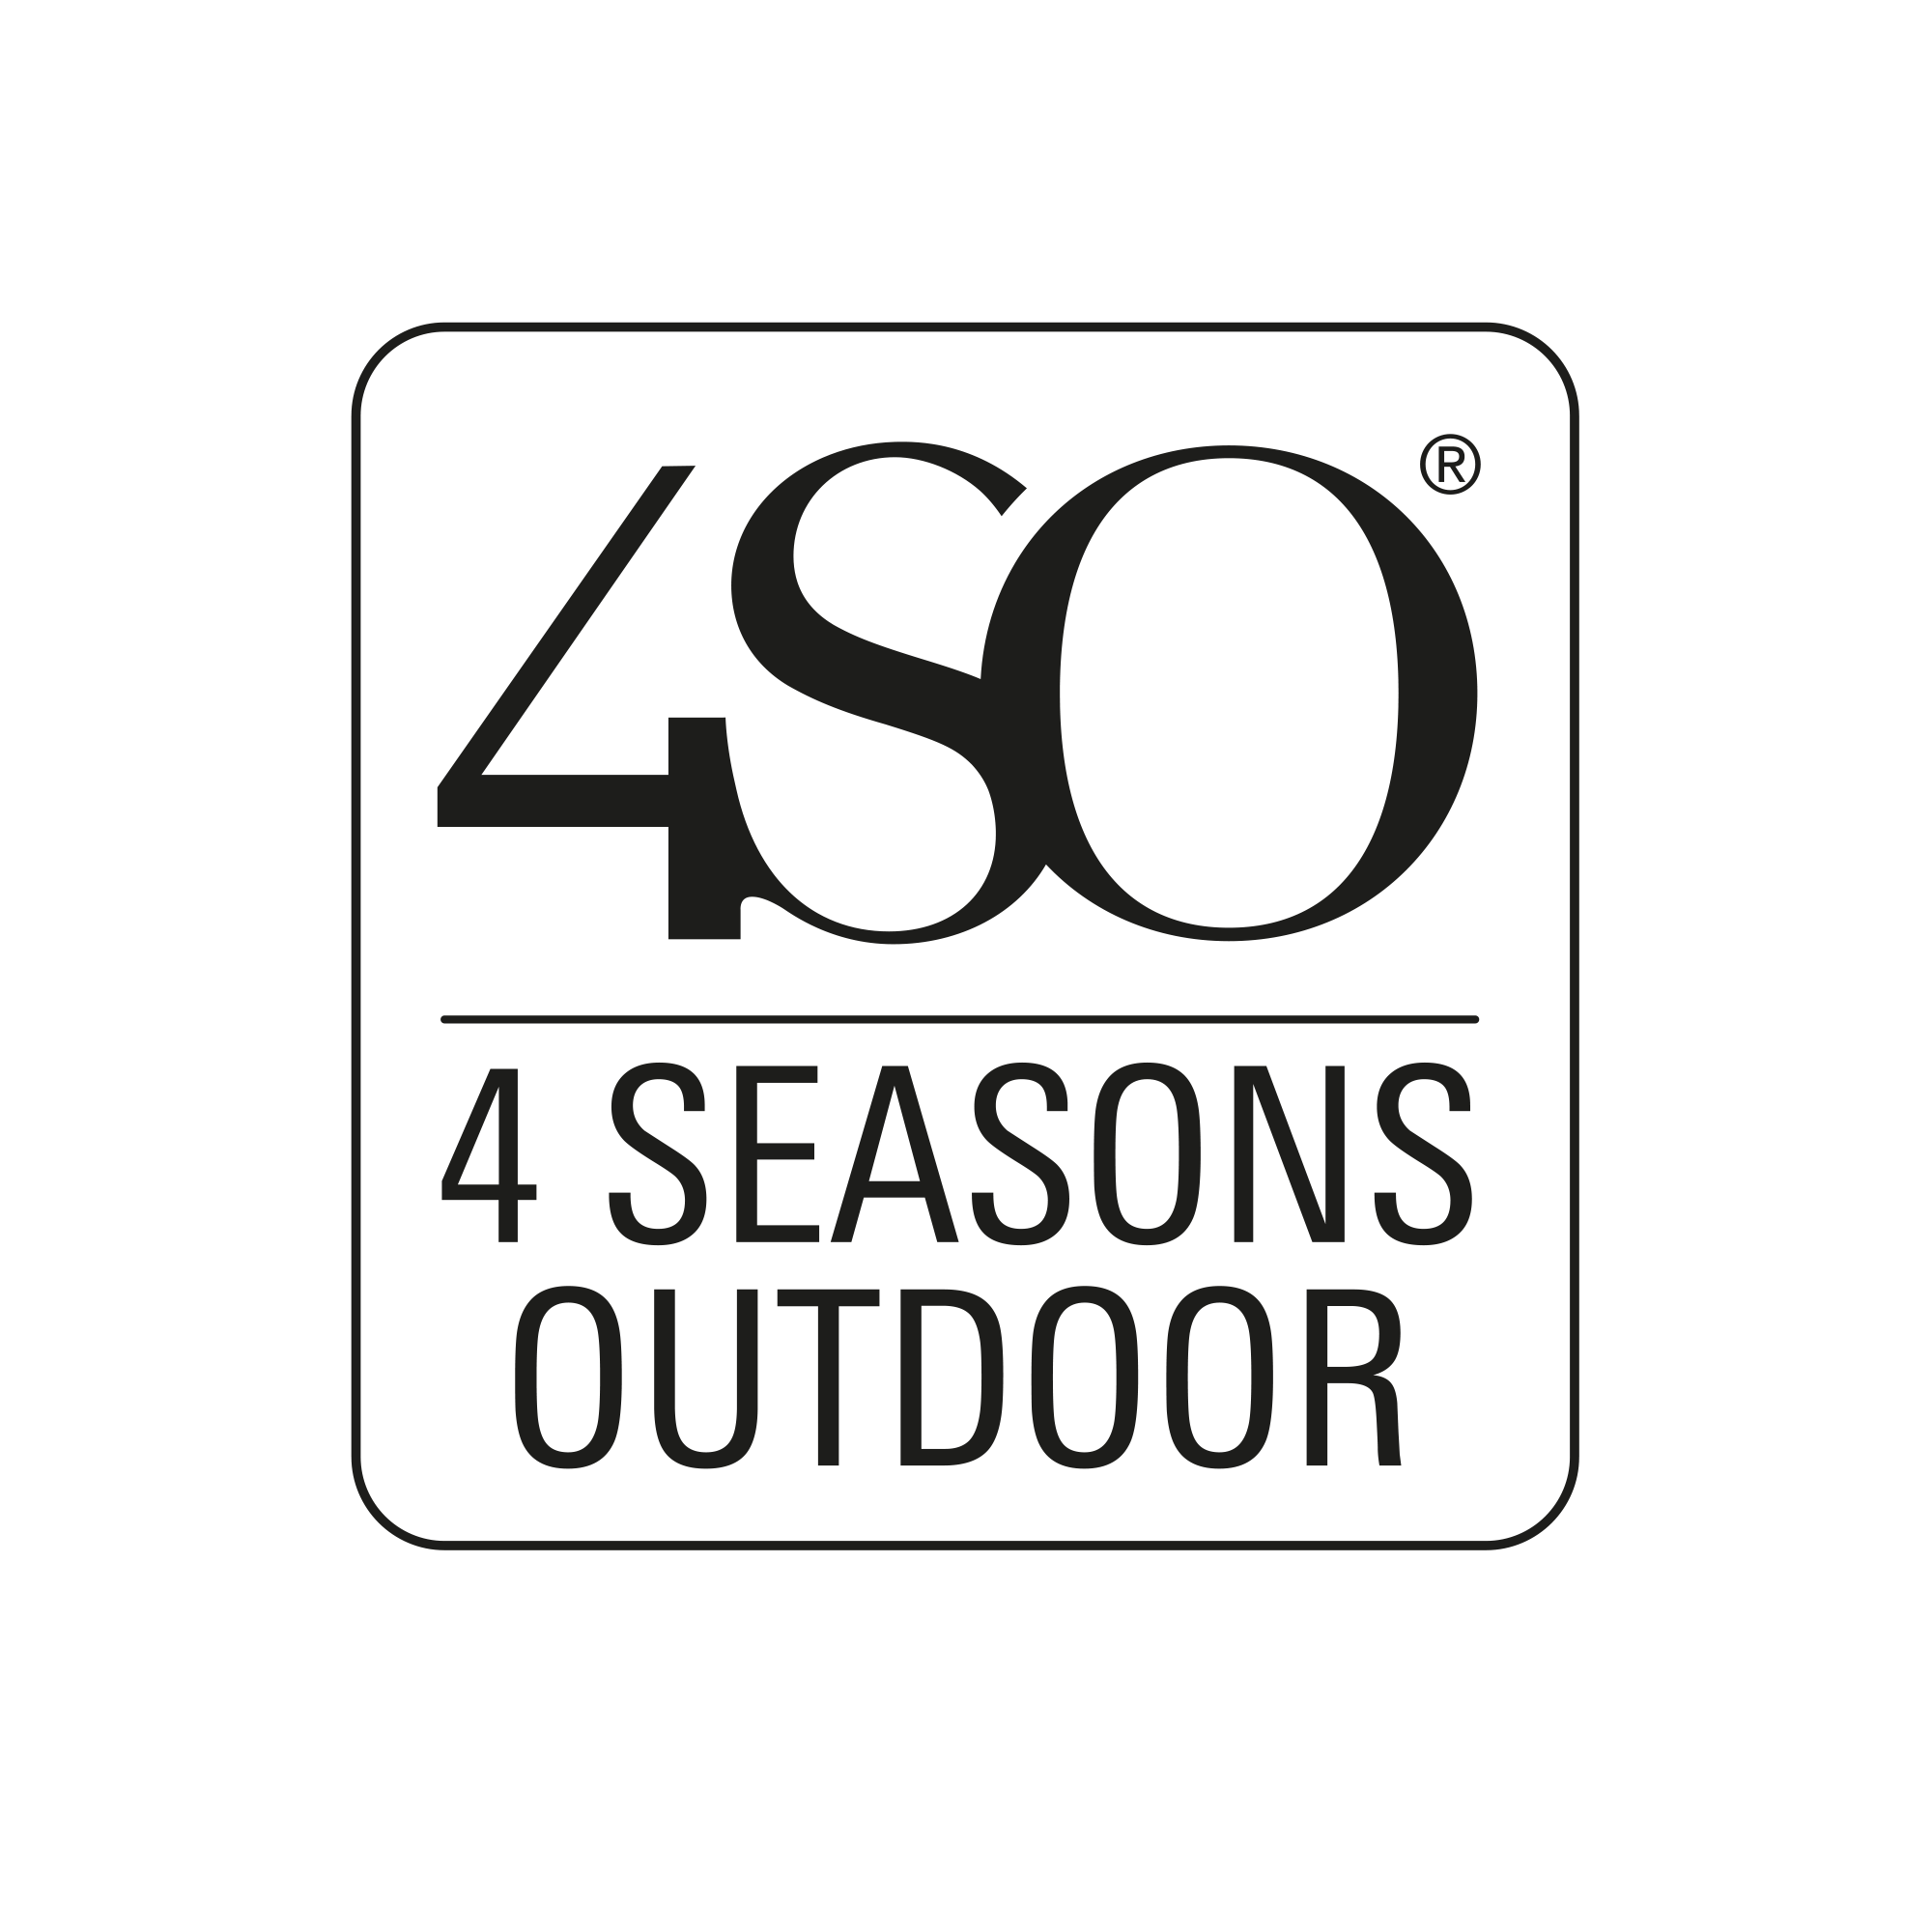 4 seasons outdoor